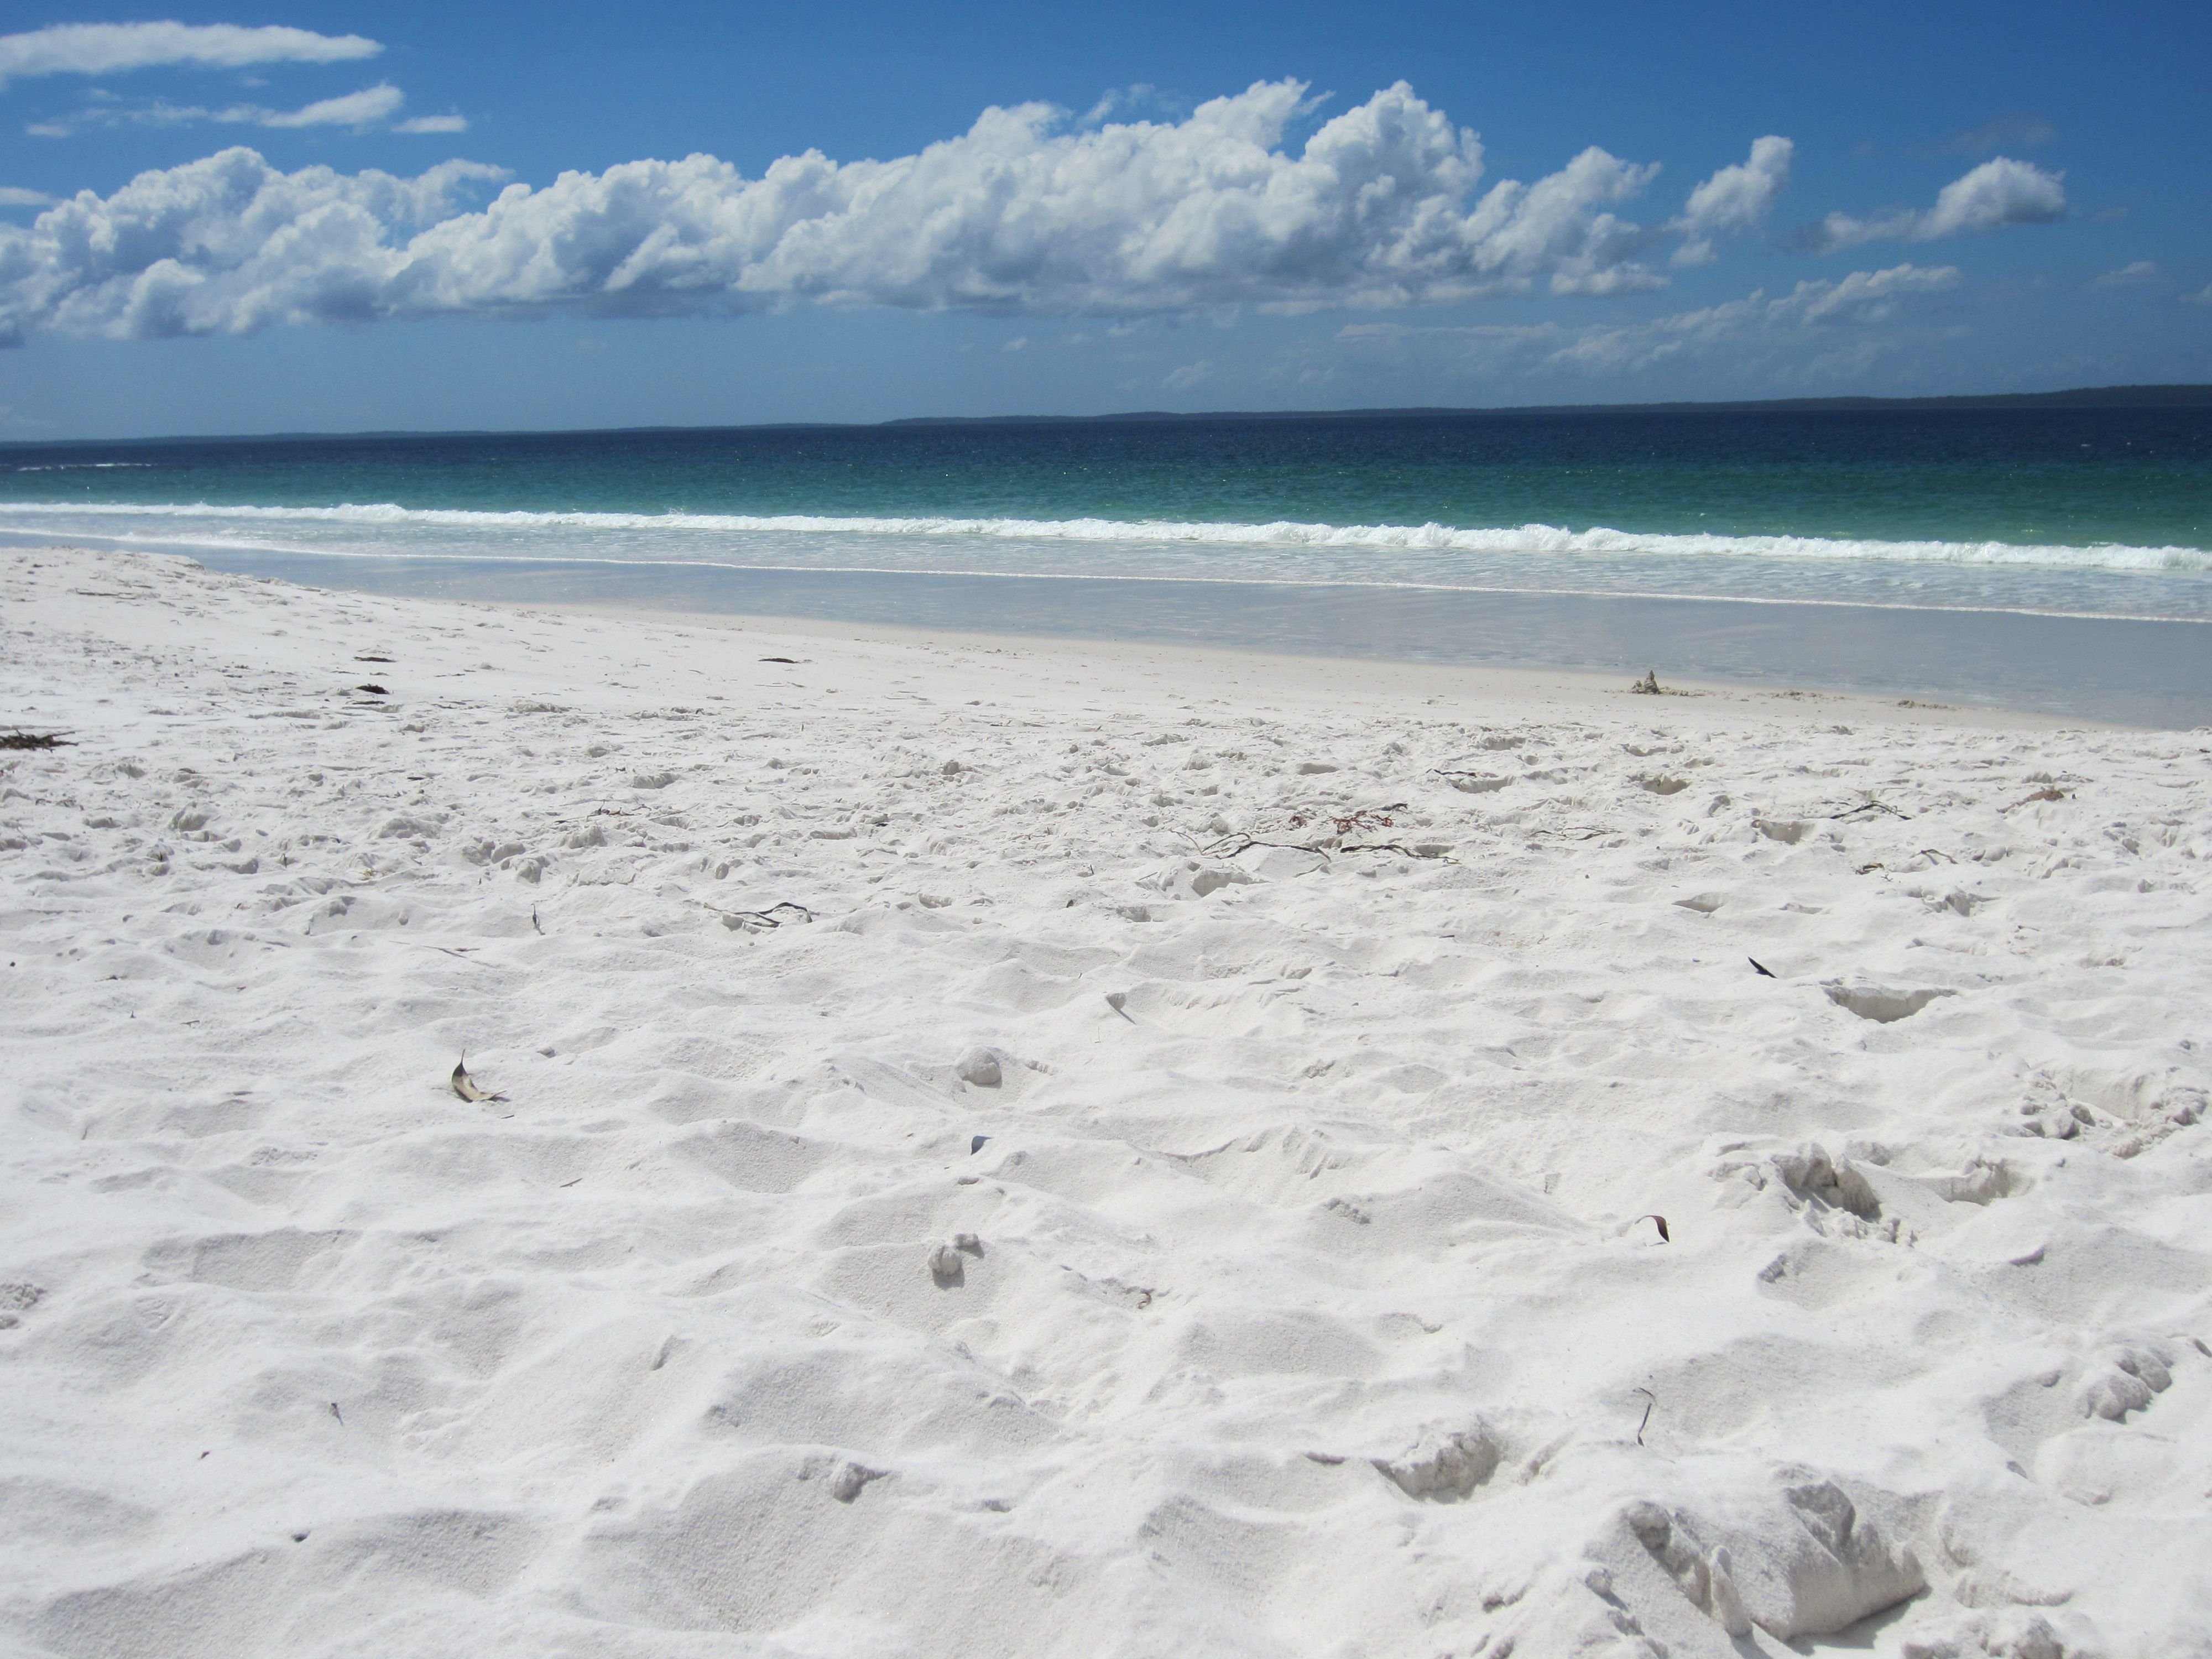 Its beach beach beach. Уайт Сэнд Бич. White Sand Beach (Вайт Сэнд Бич). Пляж Уайт Сэндс. White Sand Beach - Уайт Сэнд Бич - пляж белый песок.